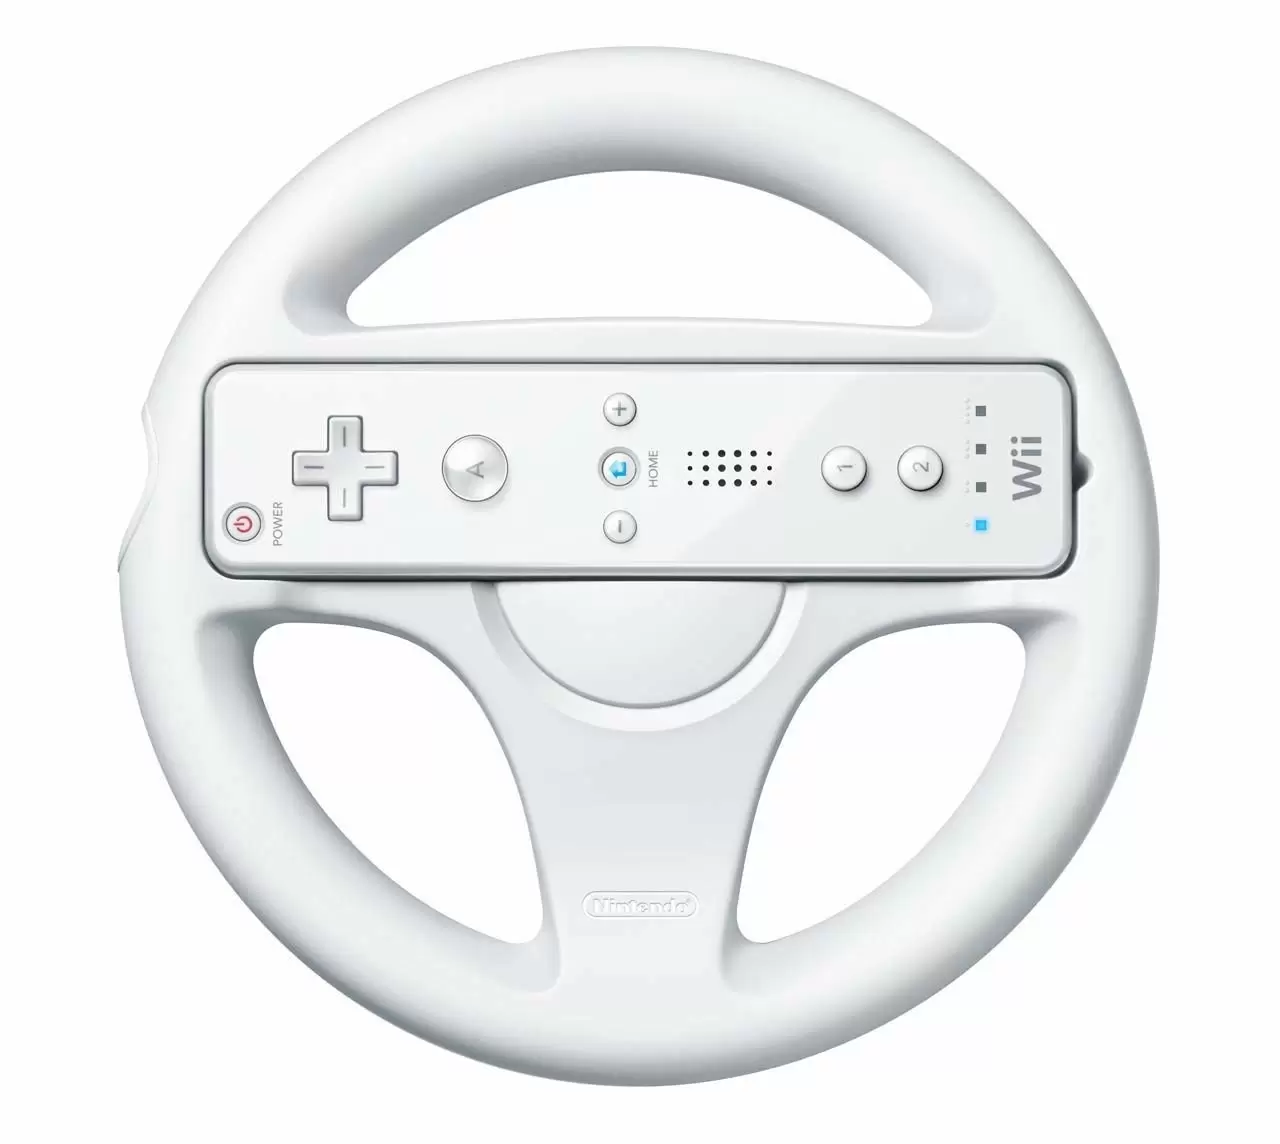 Matériel Wii U - Volant Wii wheel